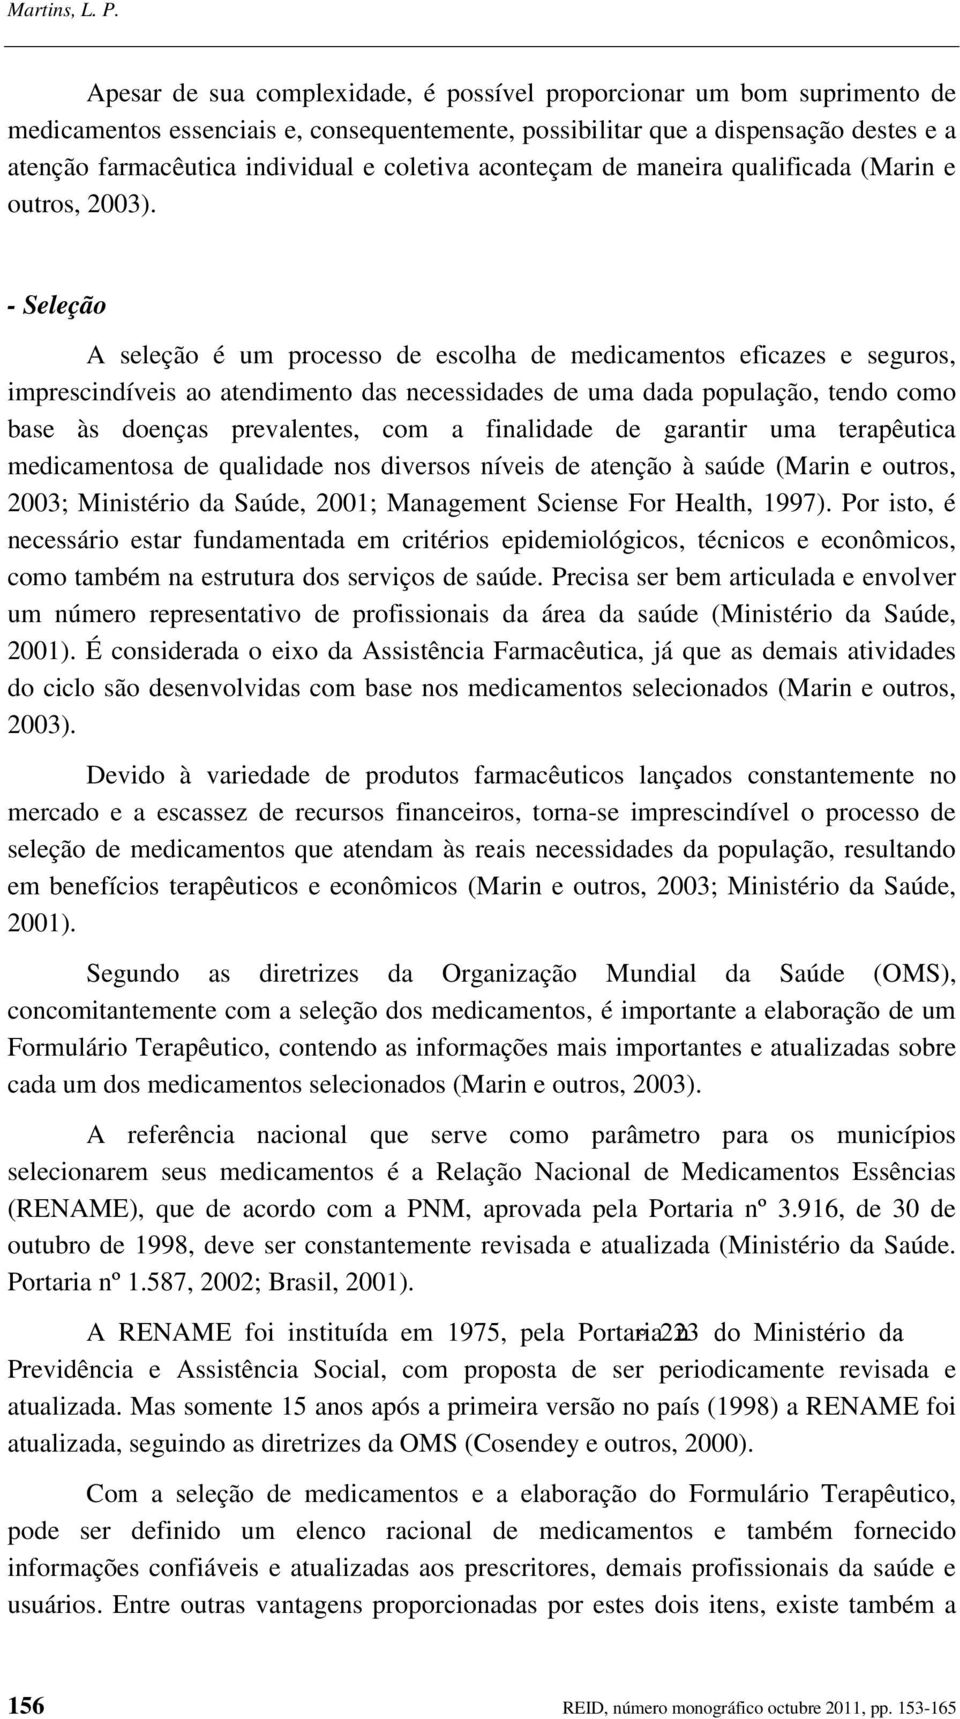 coletiva aconteçam de maneira qualificada (Marin e outros, 2003).